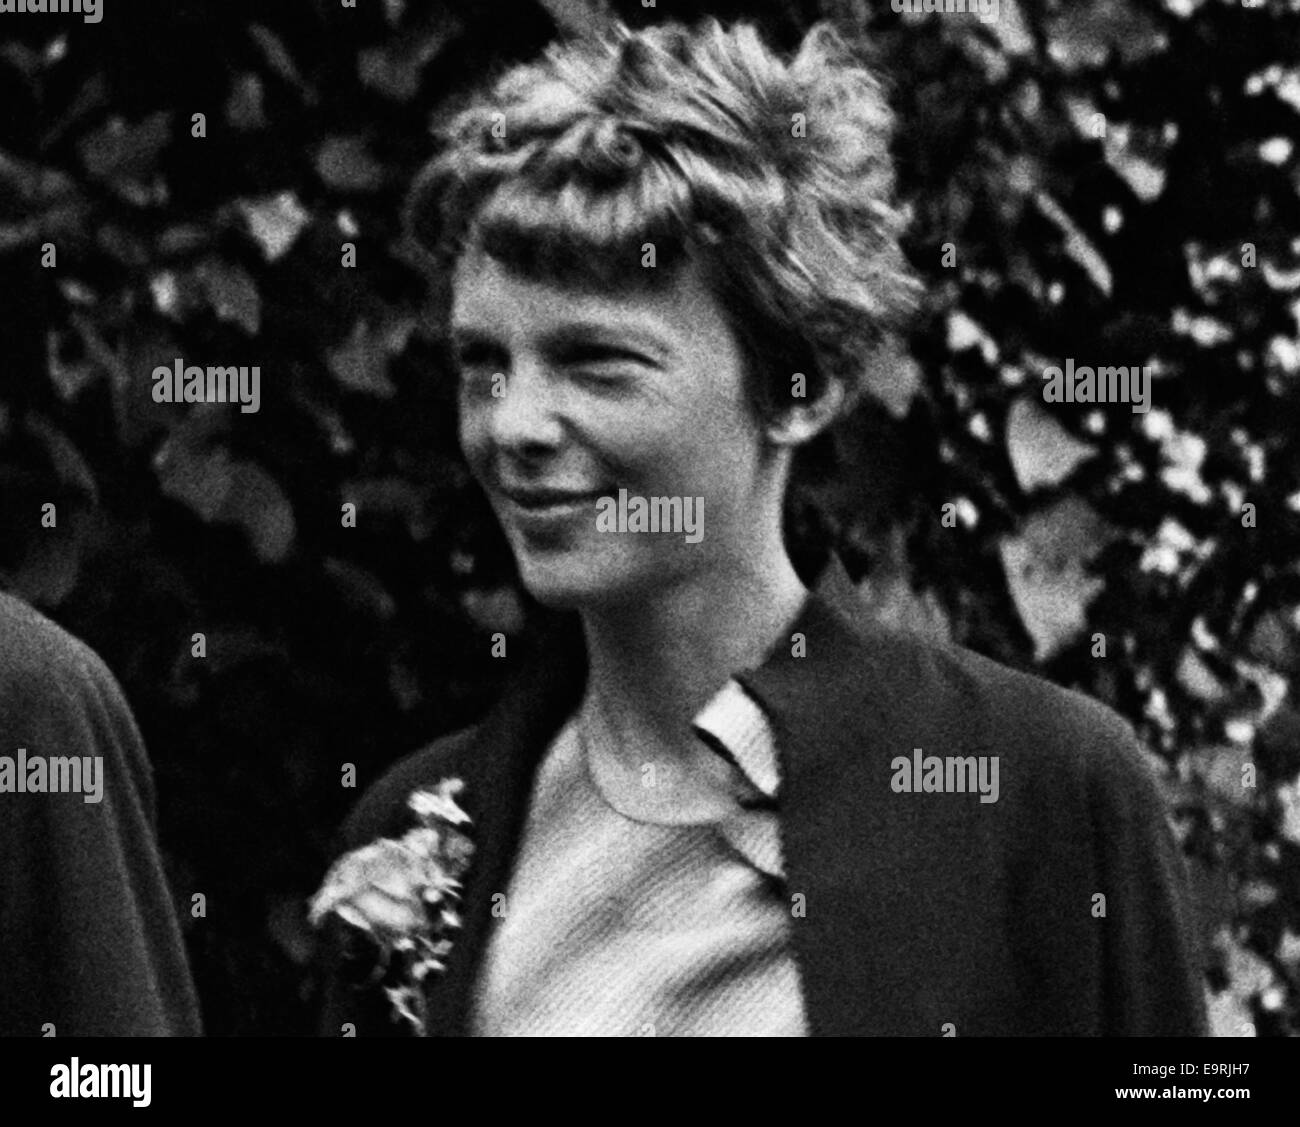 Vintage-Foto der amerikanischen Luftfahrtpionierin und Autorin Amelia Earhart (1897 – 1939 für tot erklärt) – Earhart und ihr Navigator Fred Noonan verschwanden 1937 bekanntermaßen, als sie versuchte, das erste Weibchen zu werden, das einen Rundflug über den Globus absolvierte. Foto aufgenommen im Juni 1932. Stockfoto